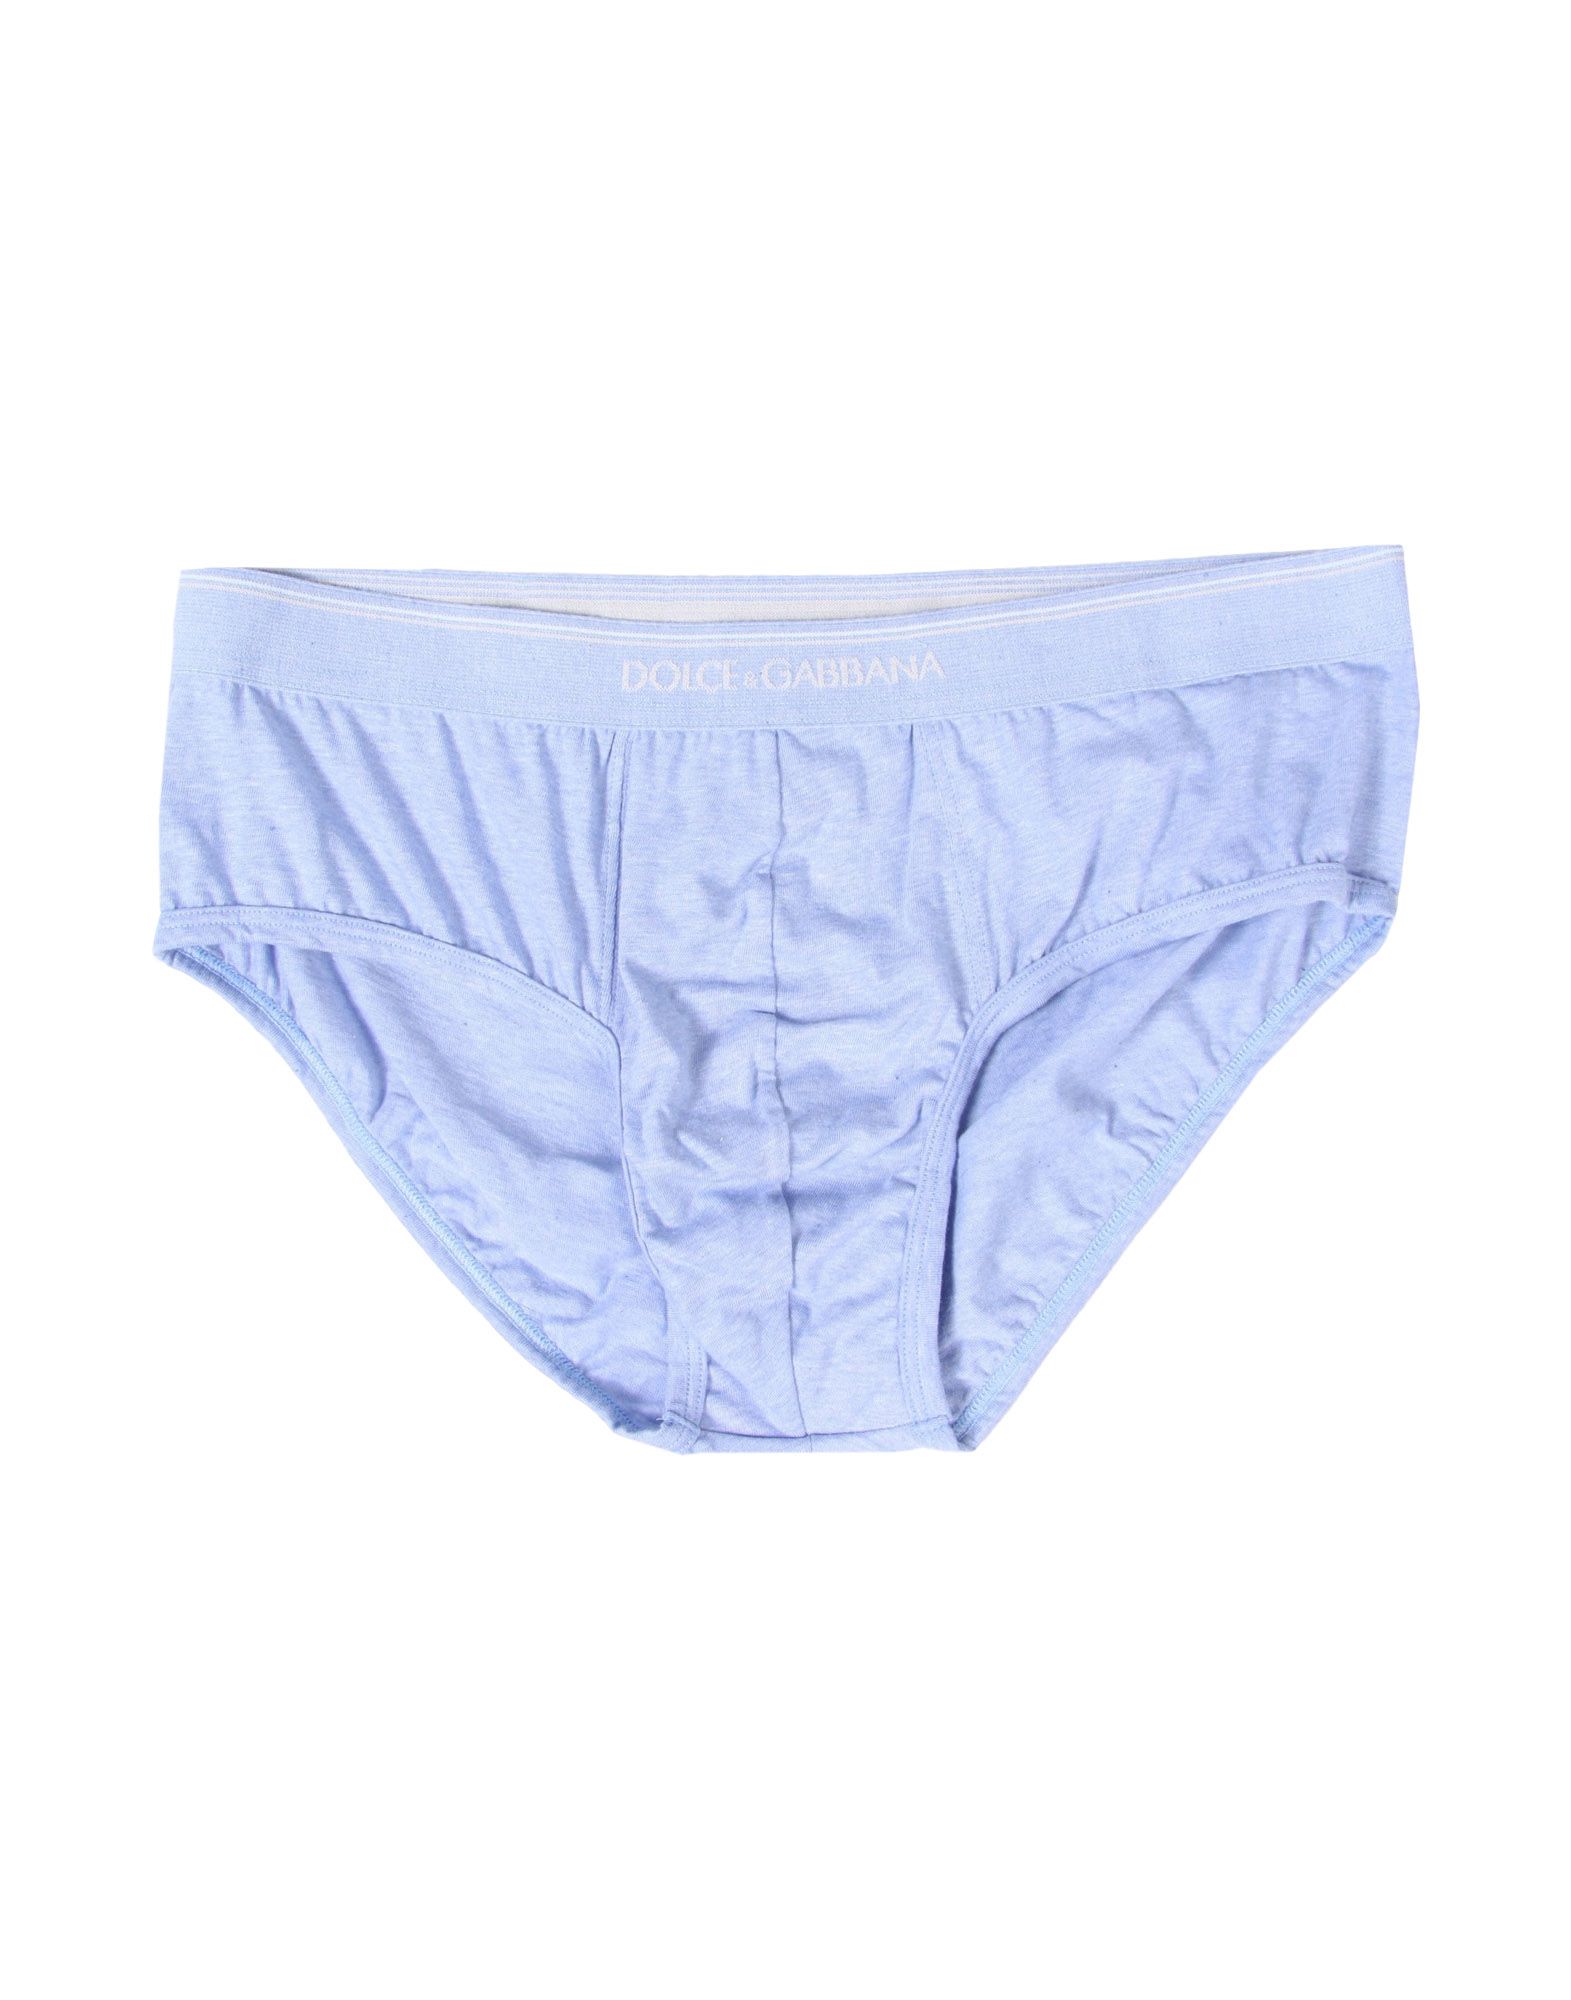 Dolce & Gabbana Underwear Brief   Women Dolce & Gabbana Underwear Briefs   48158455FH